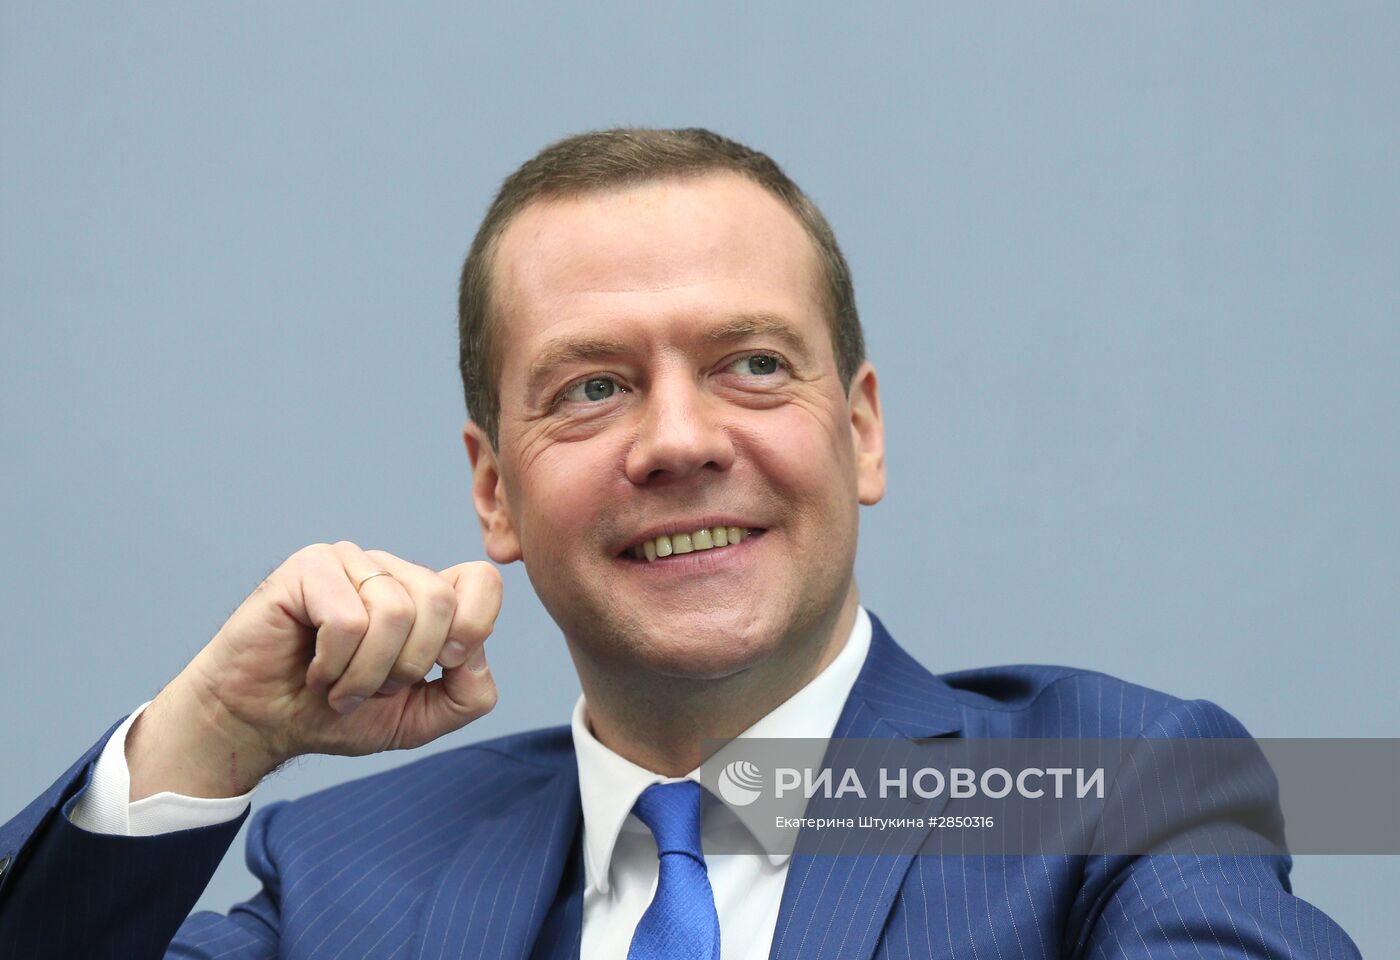 Премьер-министр РФ Д. Медведев принял участие в VI Петербургском международном юридическом форуме